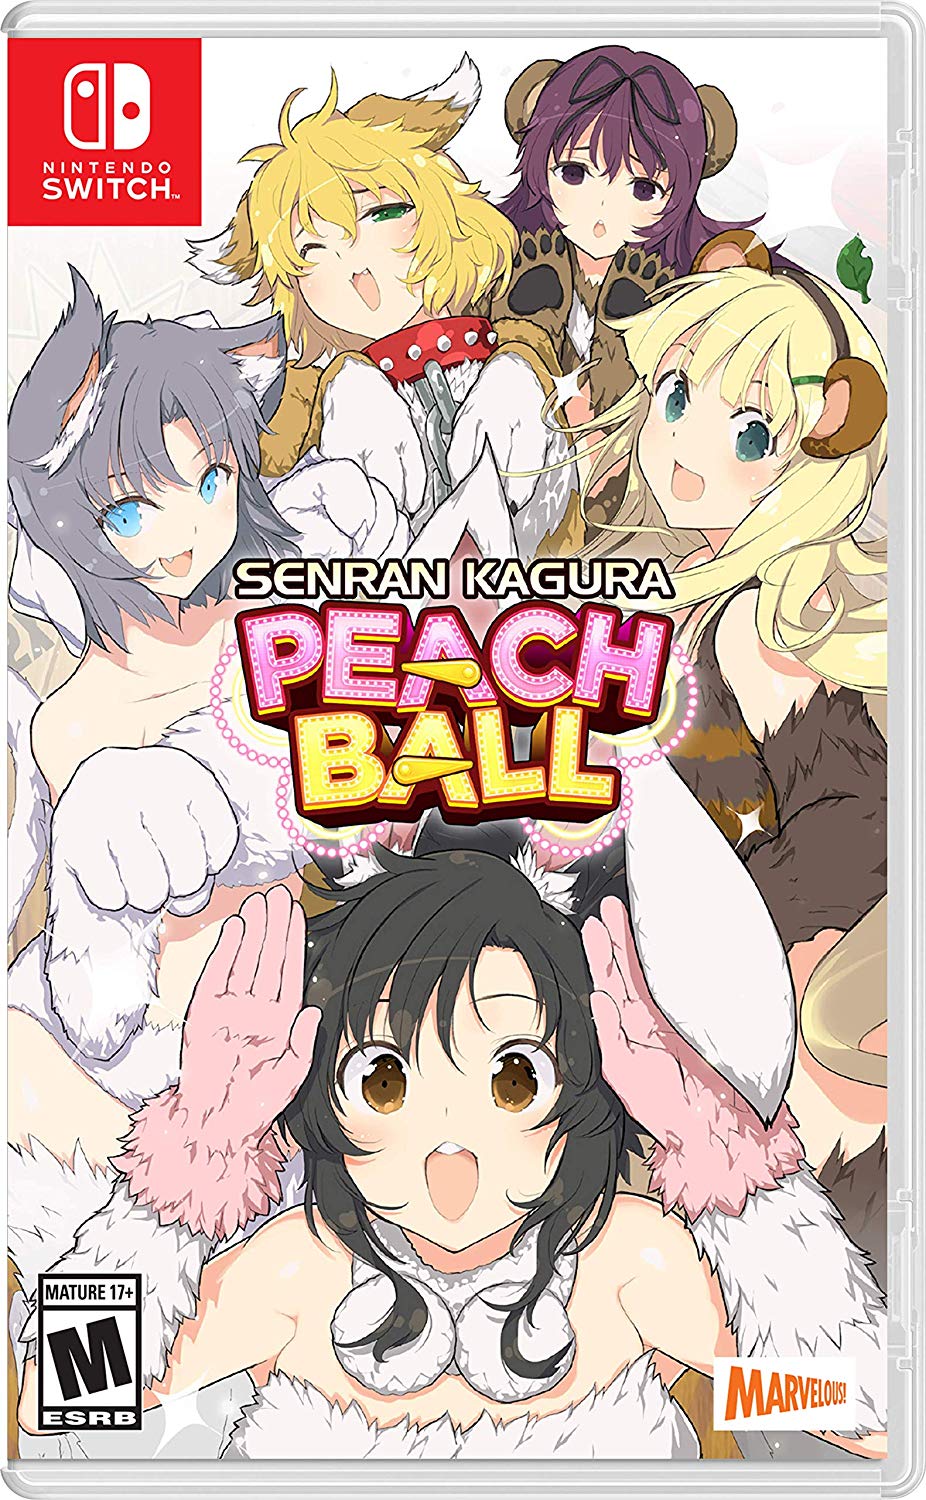 Senran Kagura: Peach Ball Western Release Coming this July 9th